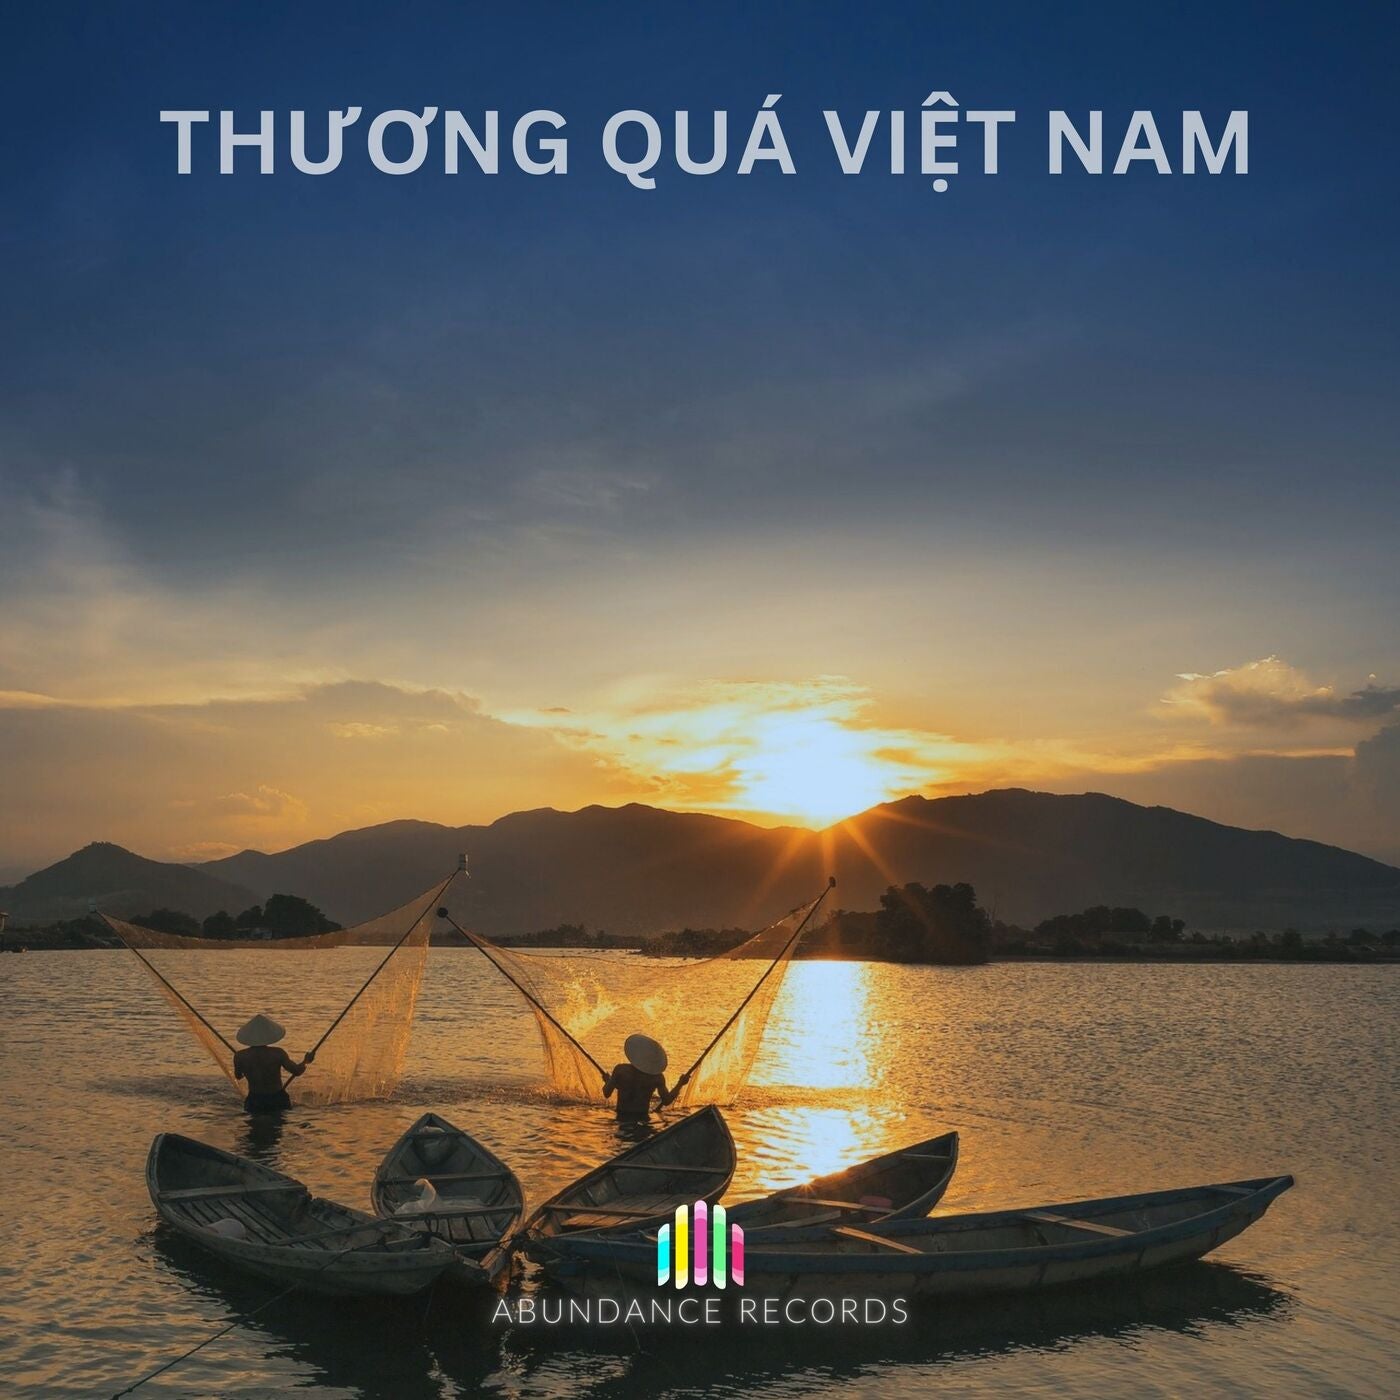 Thuong Qua Viet Nam